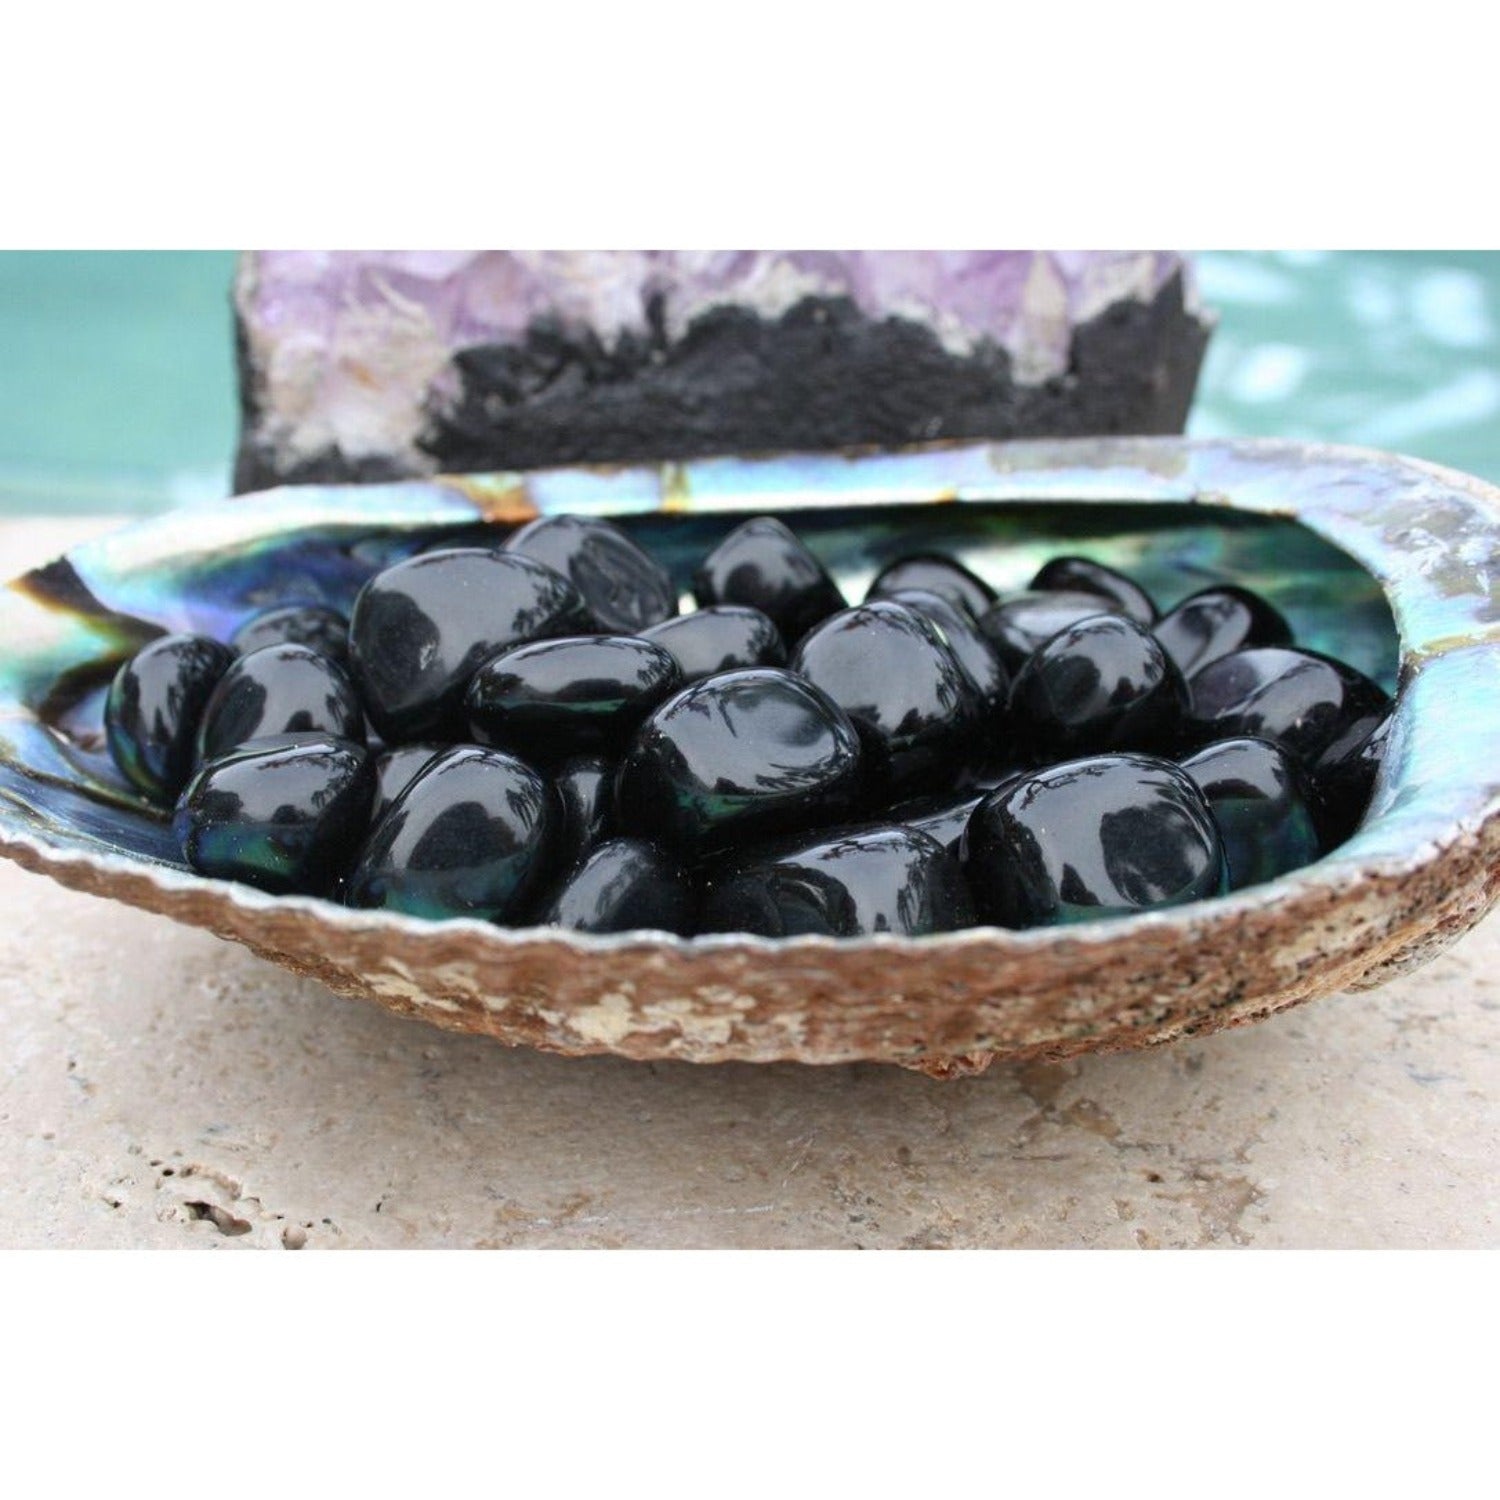 One Black Obsidian Tumble Stone